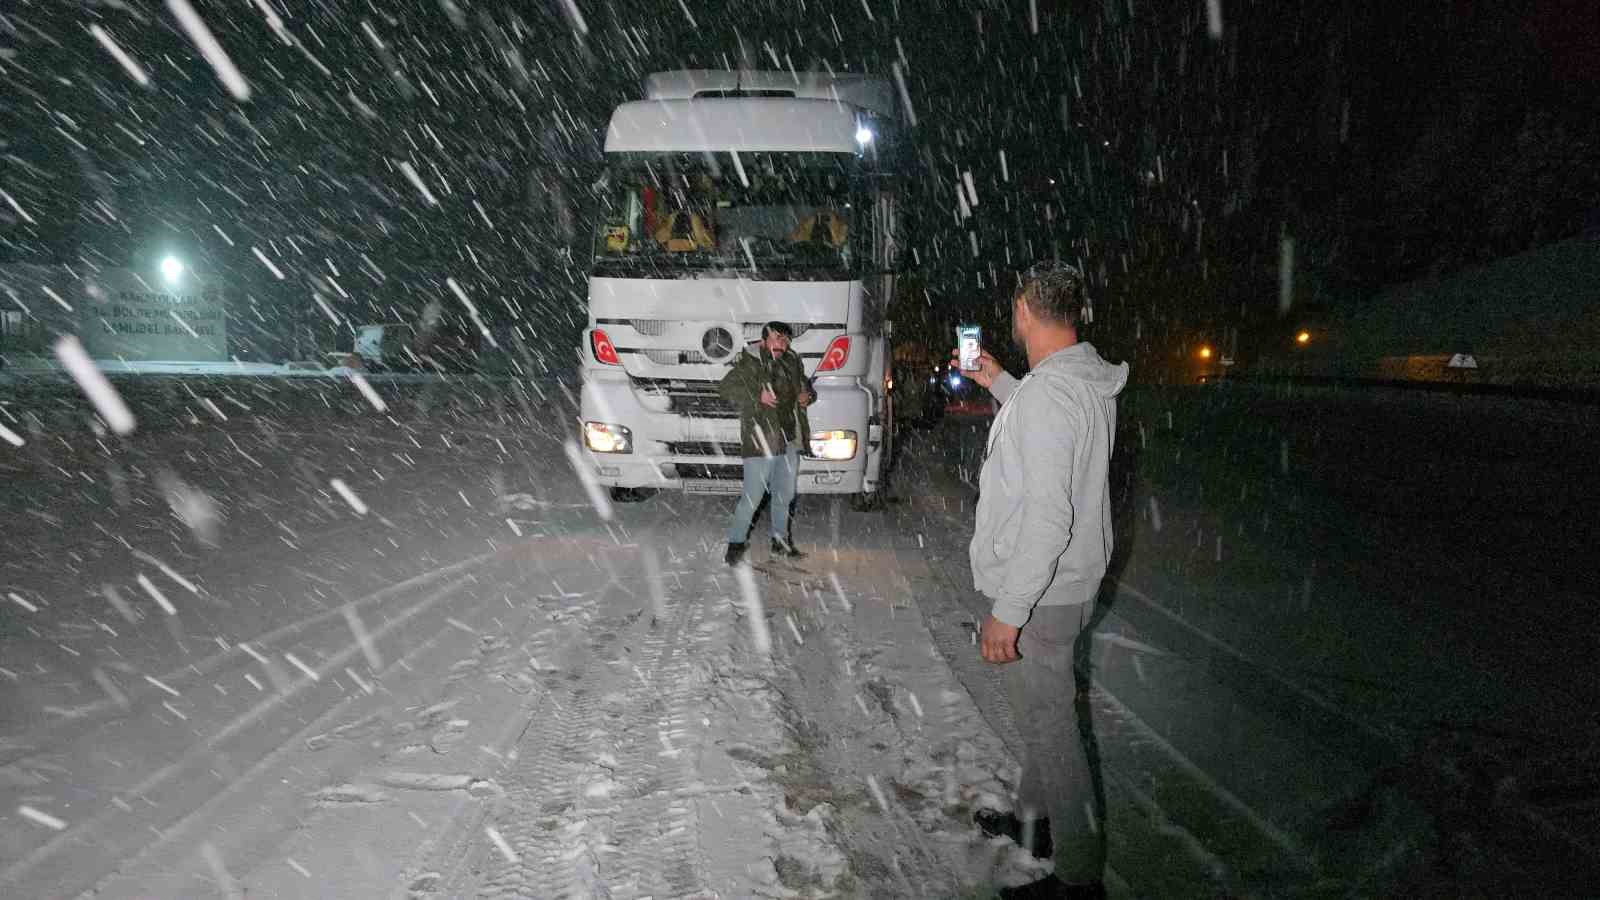 Tokat-Sivas yolunda kar yağışı etkili oldu
